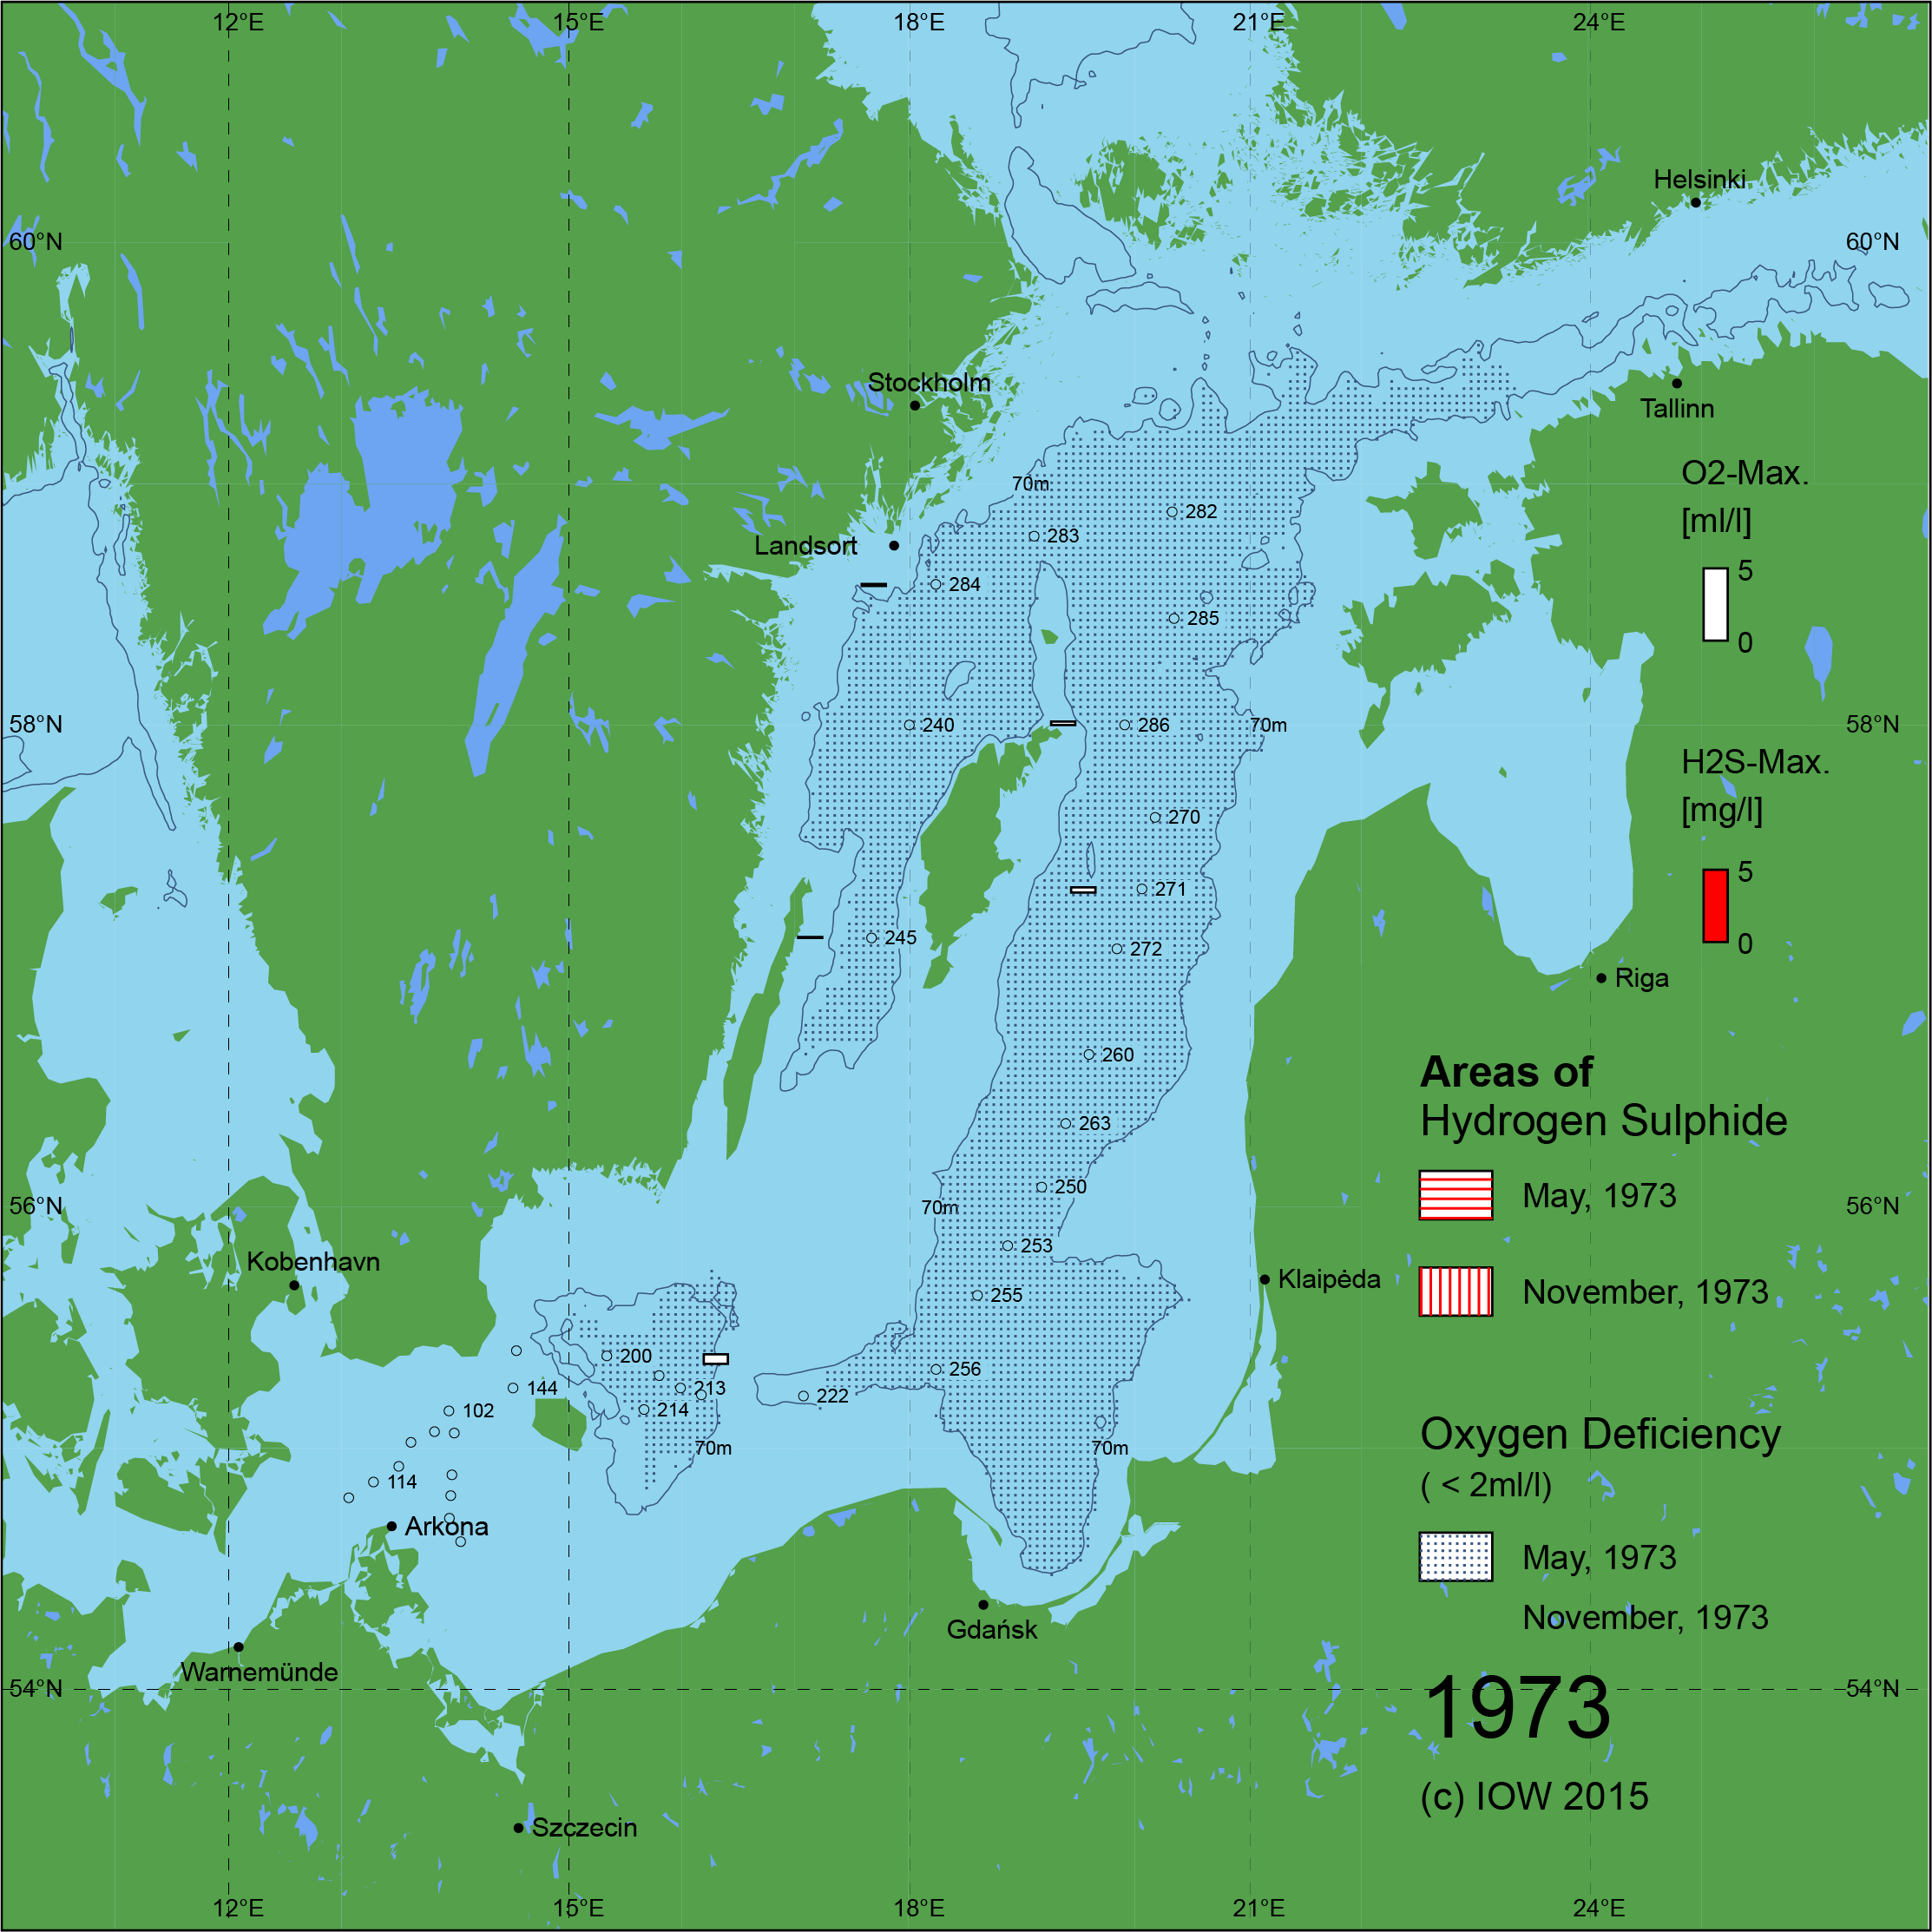 Sauerstoffarme und sauerstofffreie Gebiete in der Ostsee - 1973